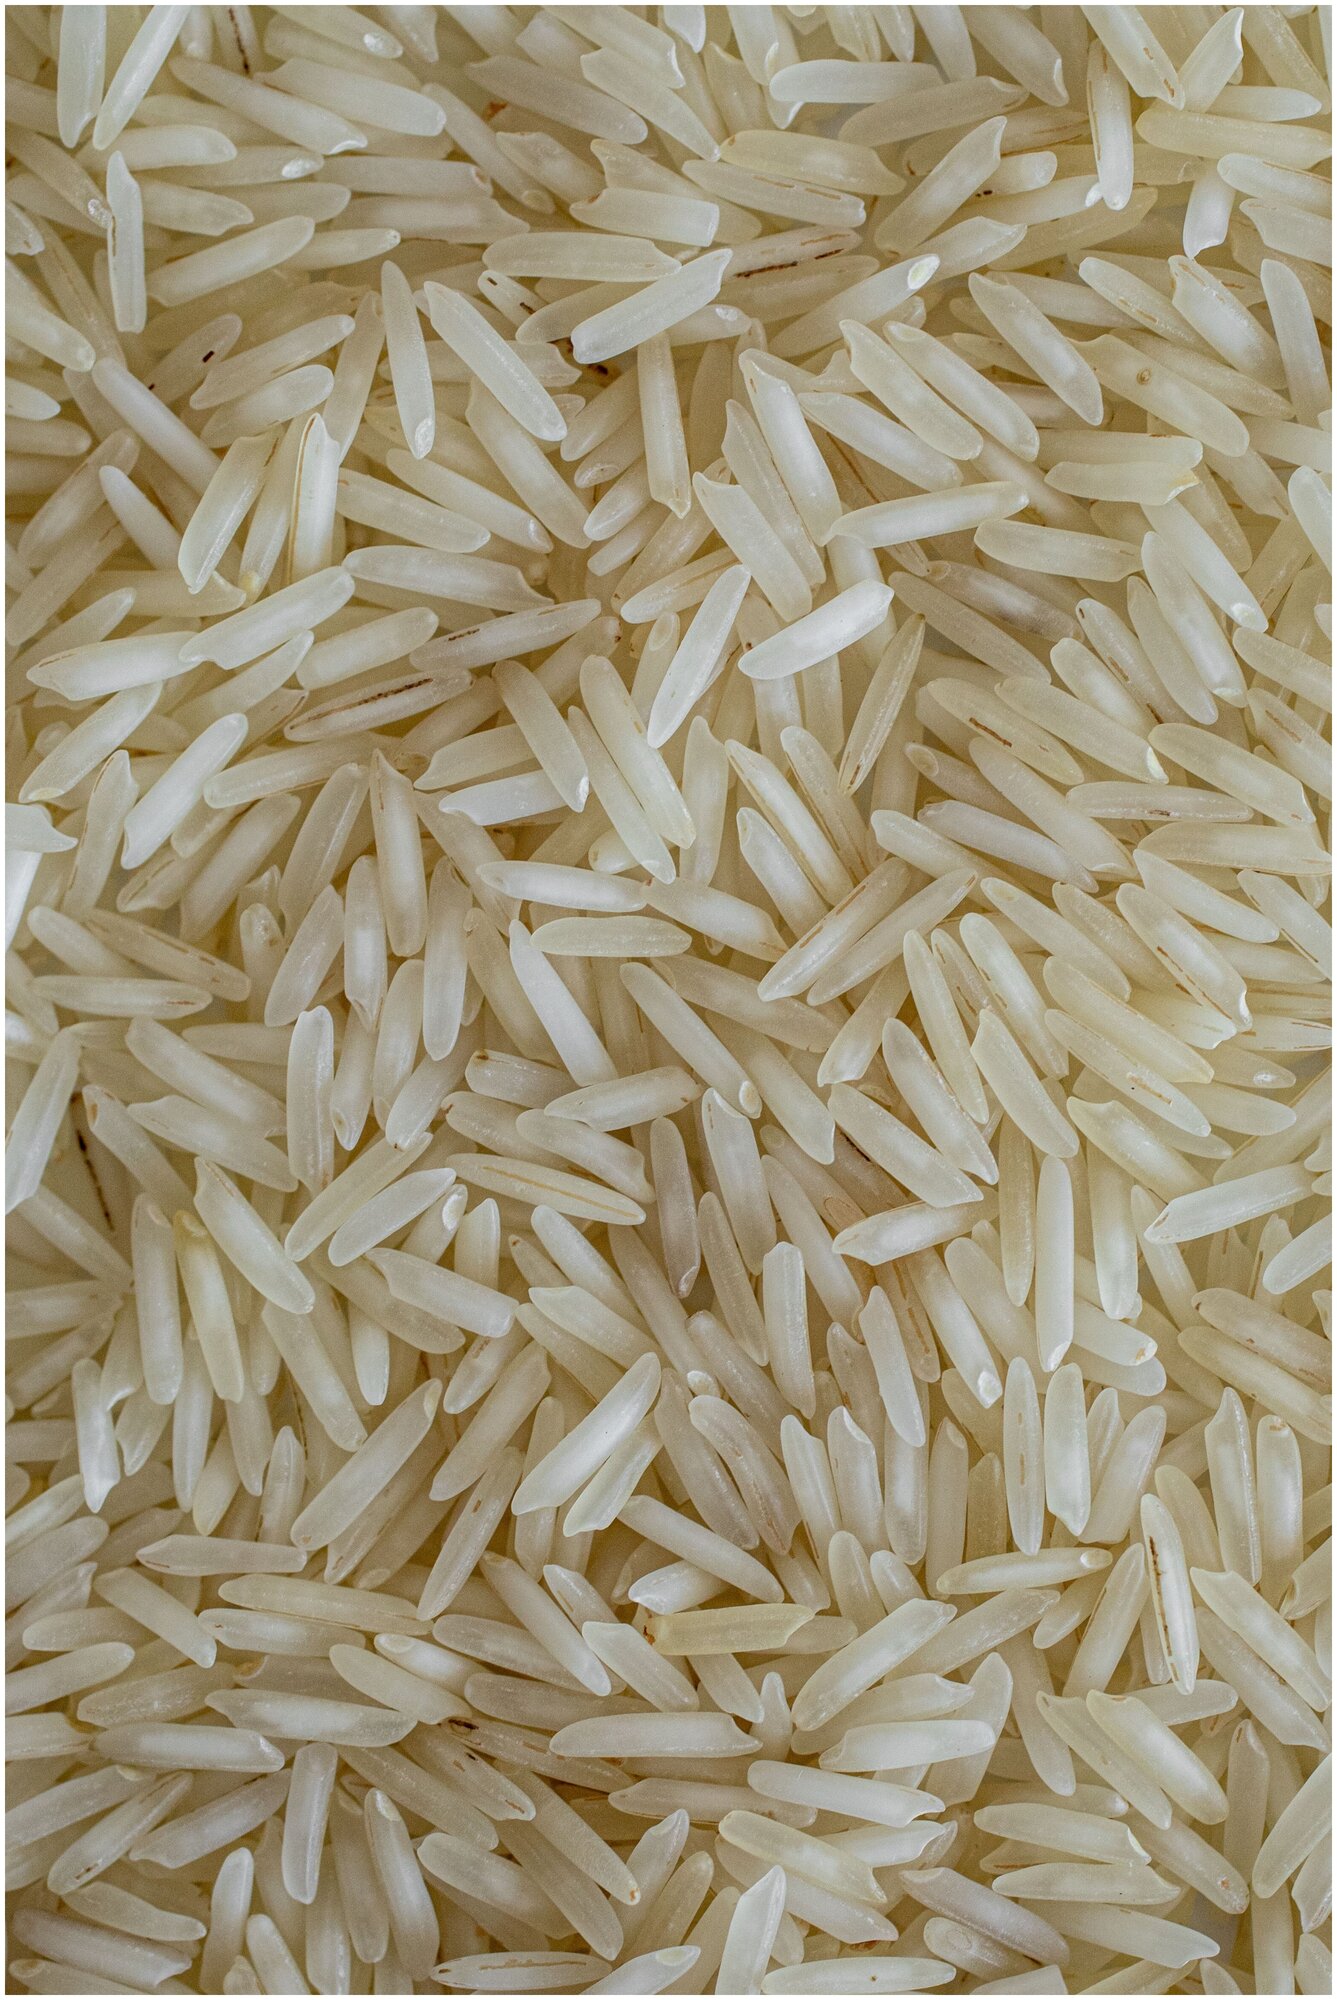 Рис басмати длиннозерный белый непропаренный Стим рис 5 кг - фотография № 7